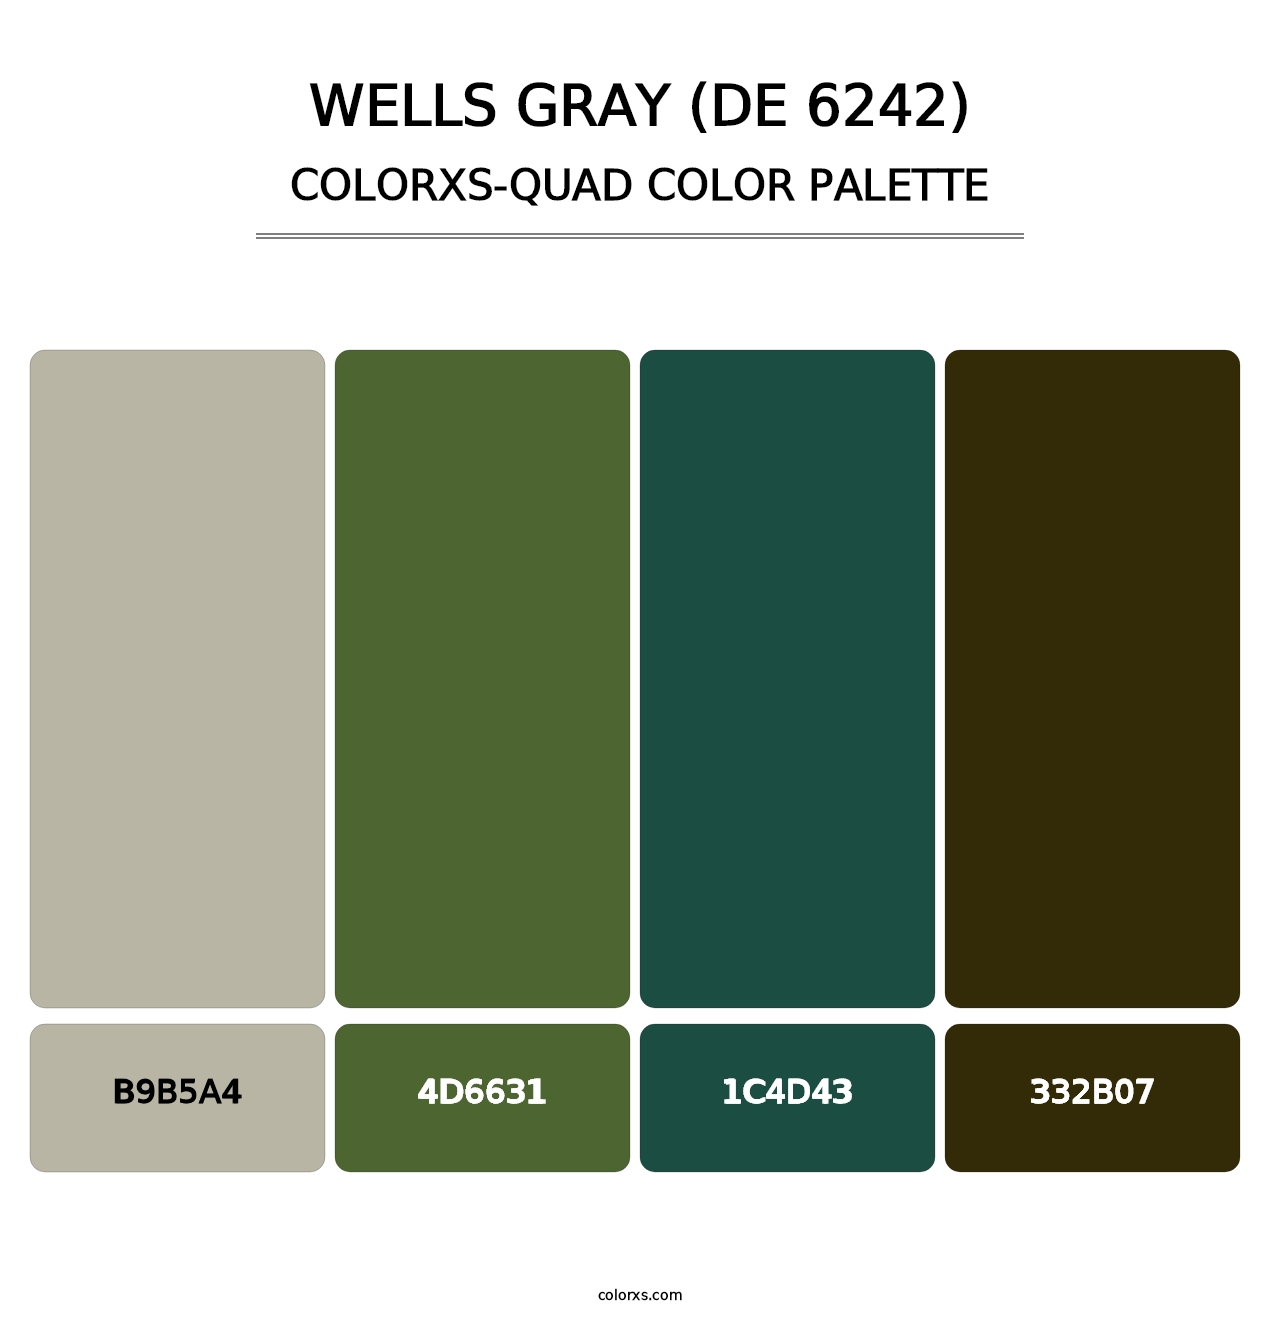 Wells Gray (DE 6242) - Colorxs Quad Palette